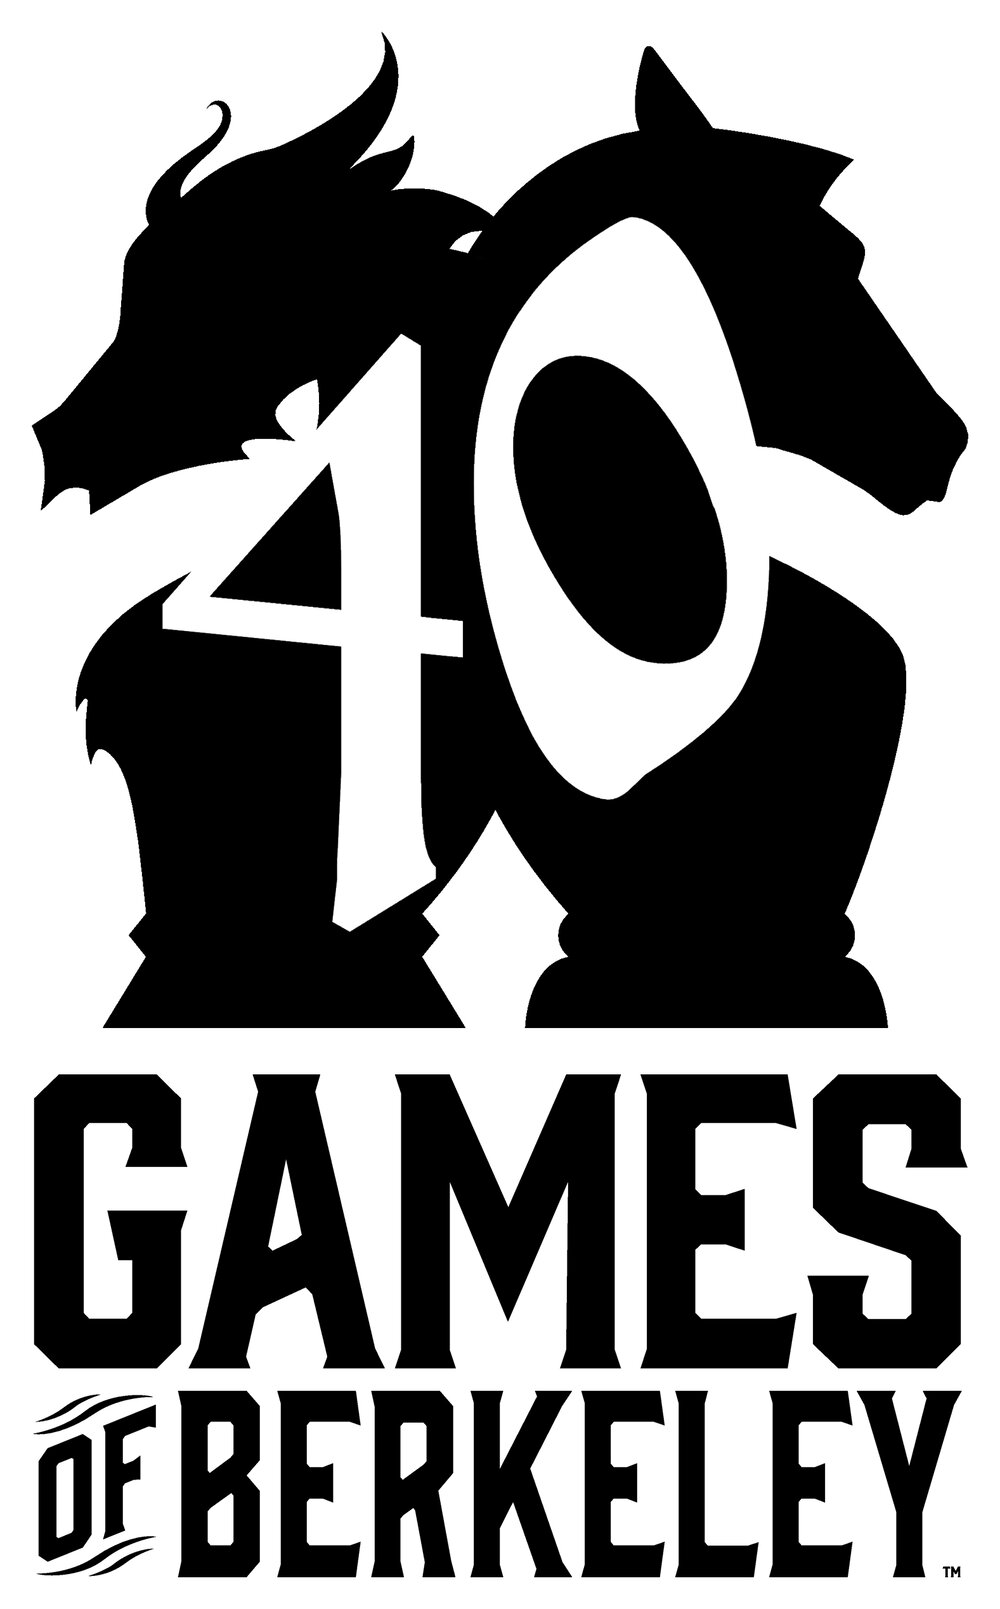 Games of Berkeley - 2510 Durant Ave, Berkeley, CA 94704(510) 540-7822gamesofberkeley.comGoogle Maps